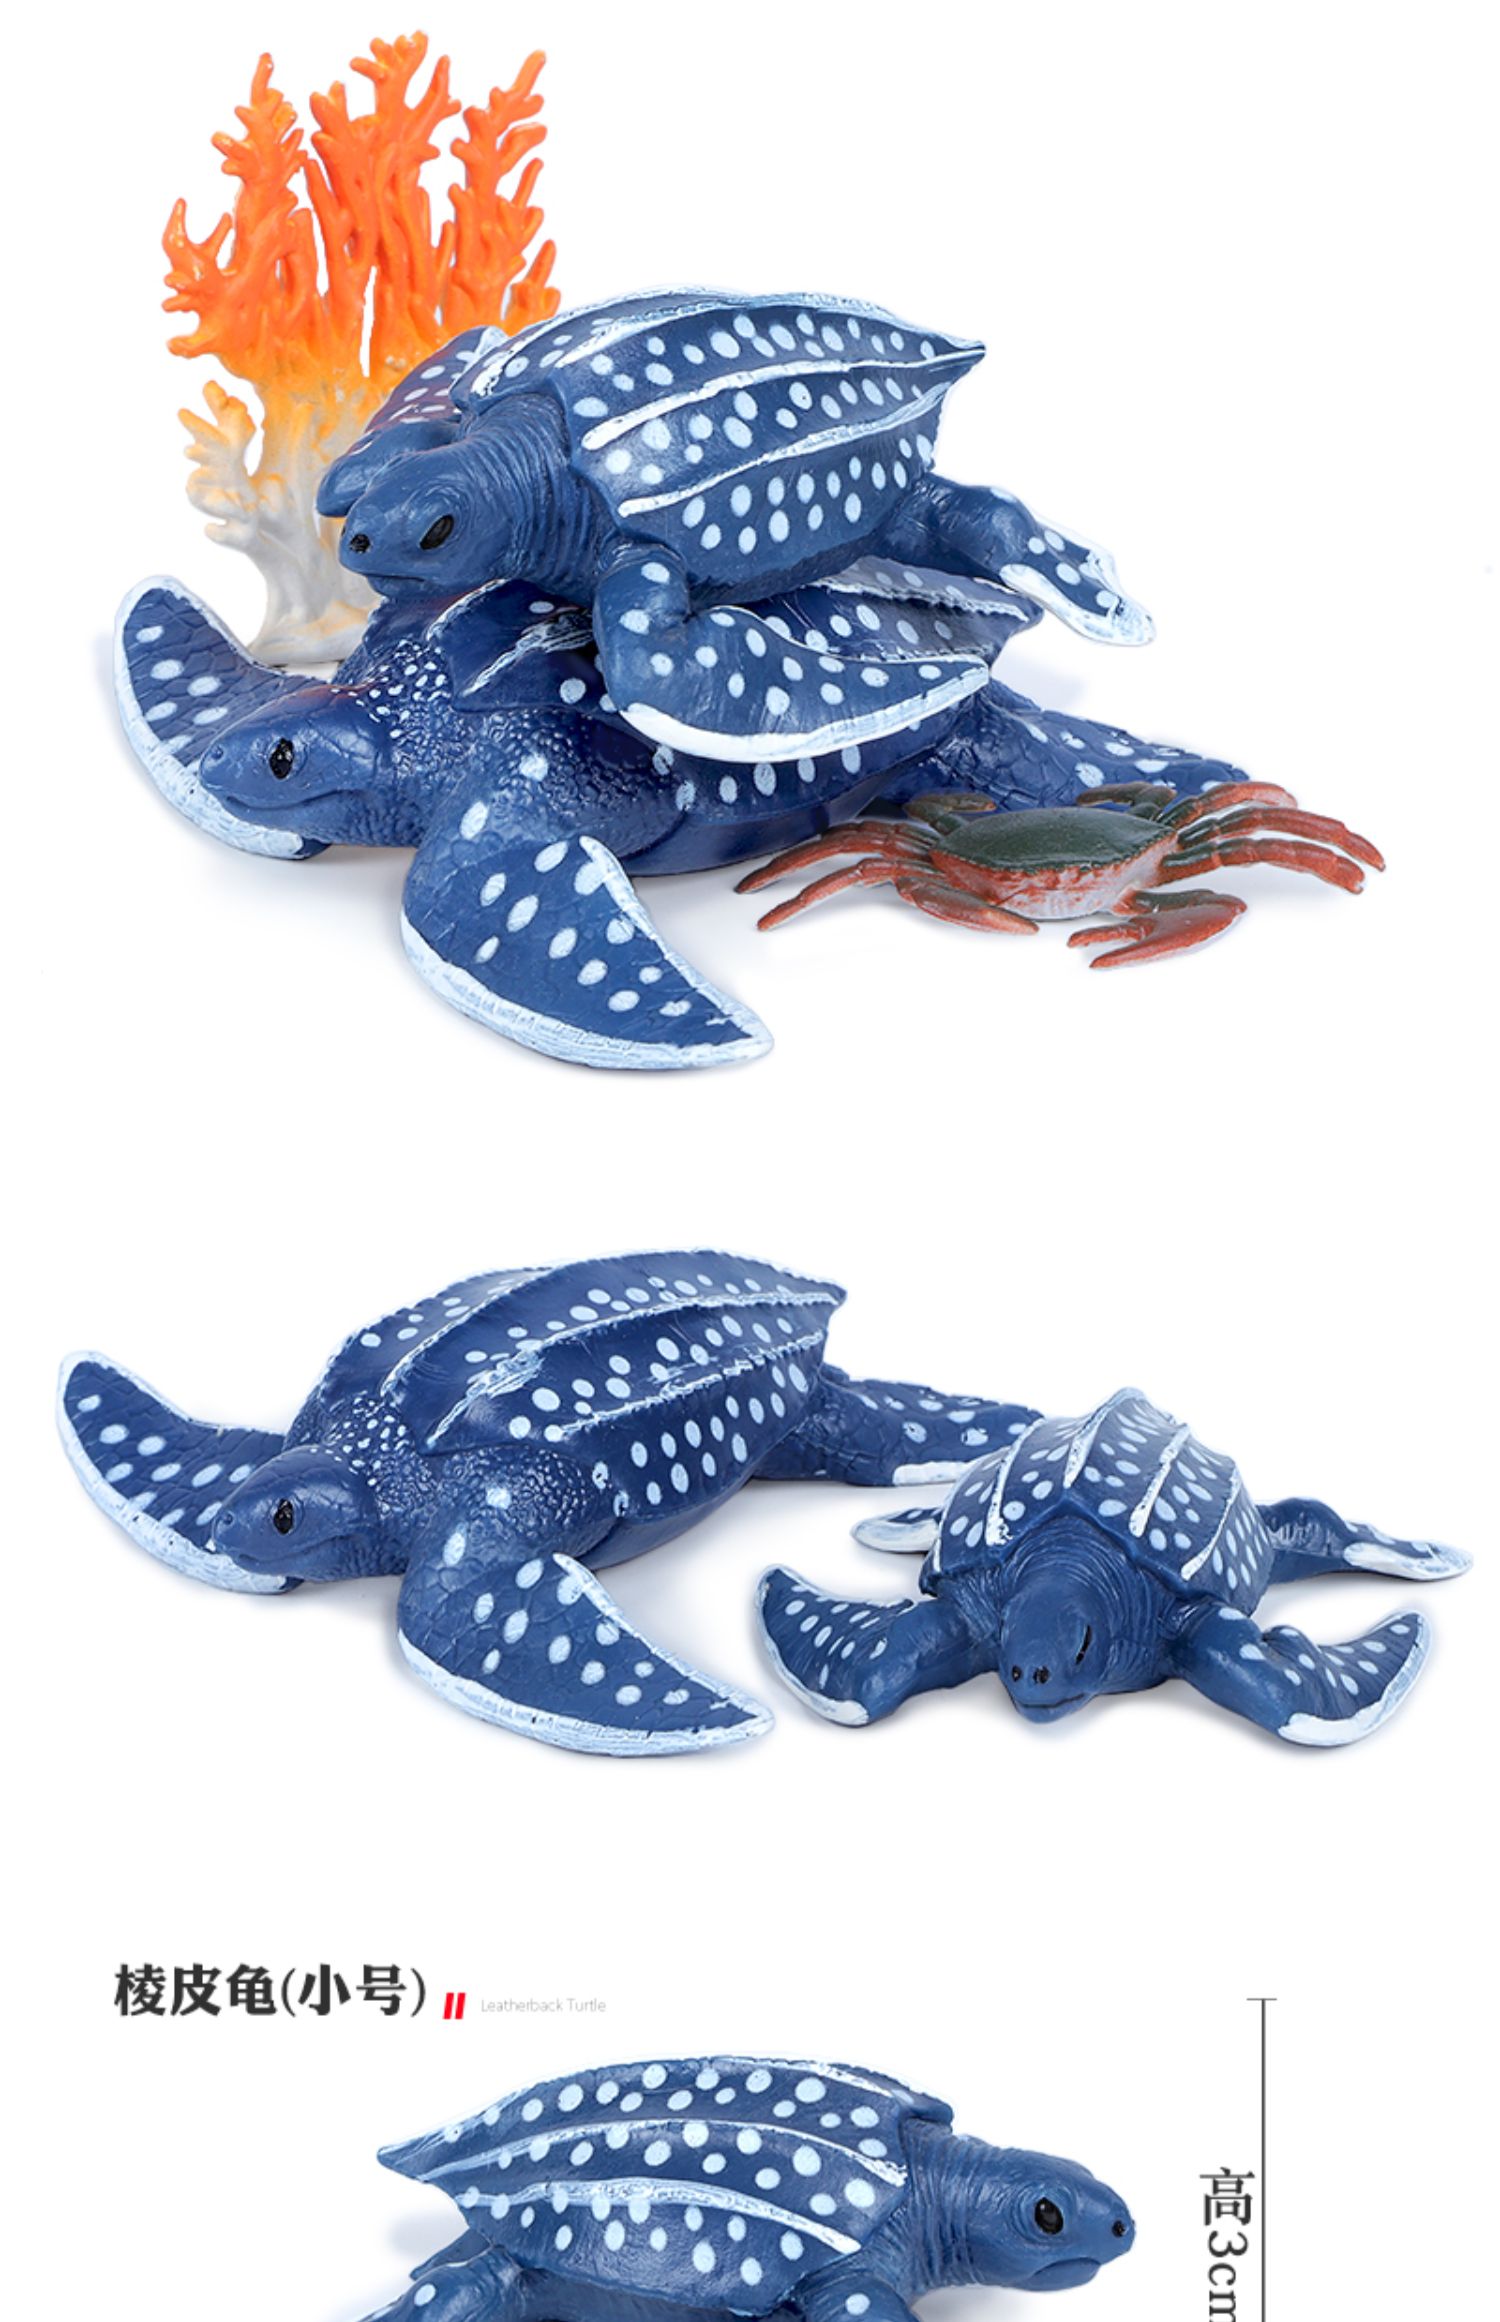 仿真海洋动物乌龟模型巴西龟玩具象龟棱皮龟海龟儿童科教玩具礼物